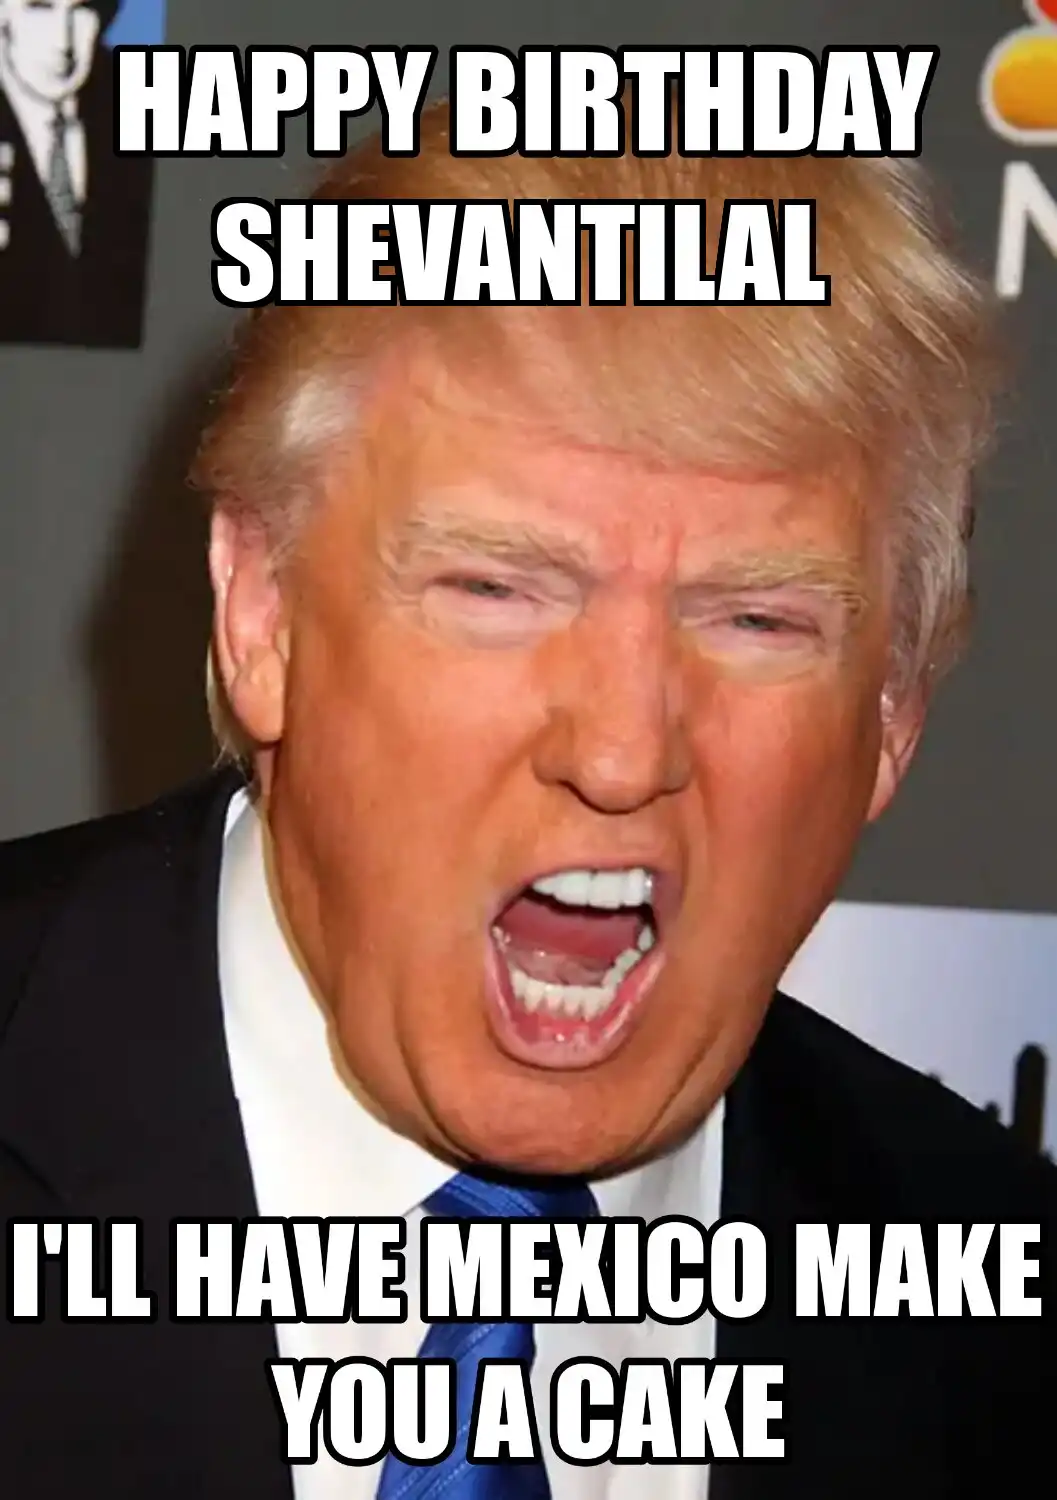 Happy Birthday Shevantilal Mexico Make You A Cake Meme